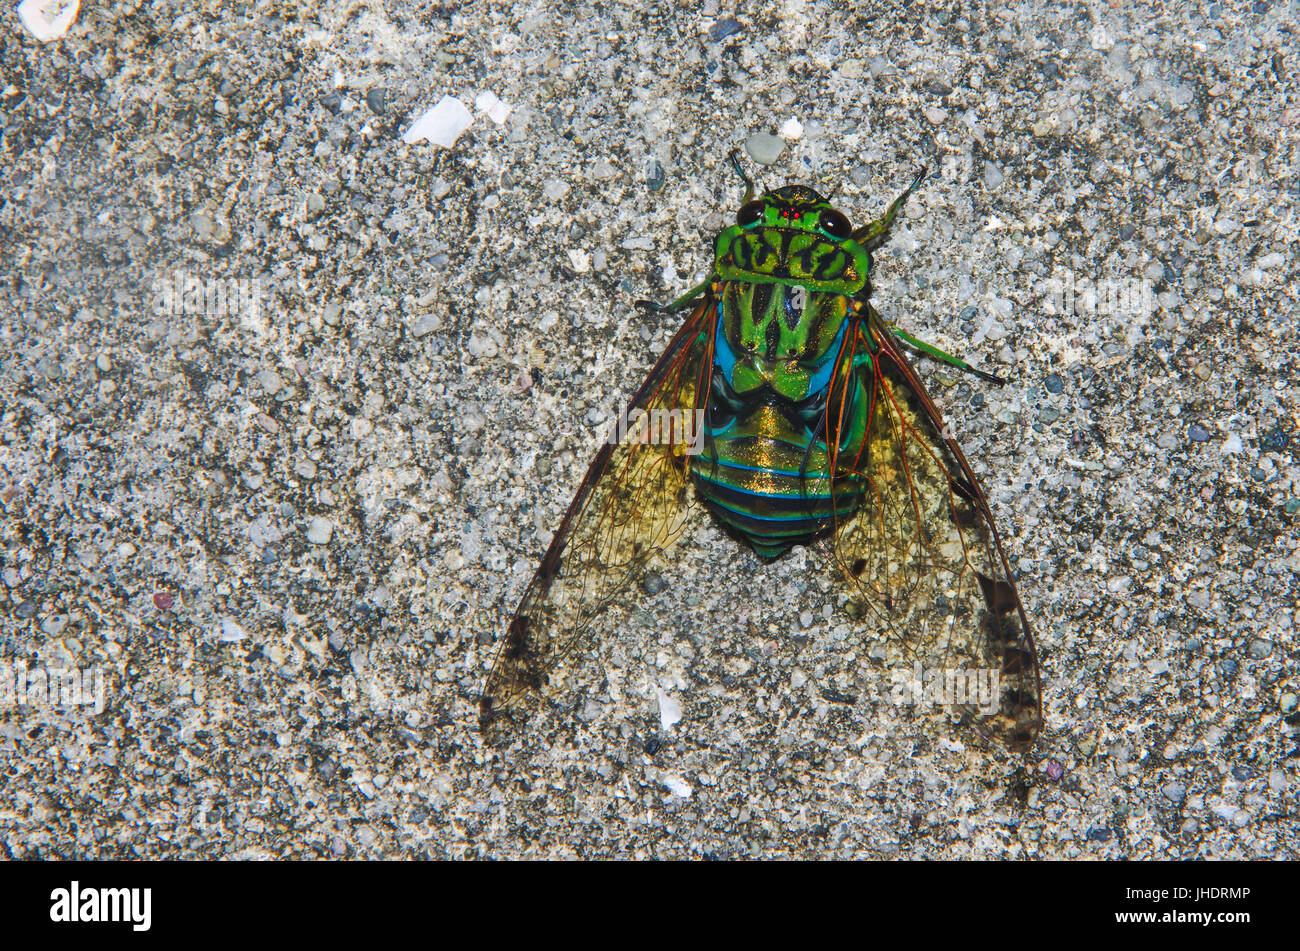 Insecte cigale close up image avec des couleurs intenses Banque D'Images